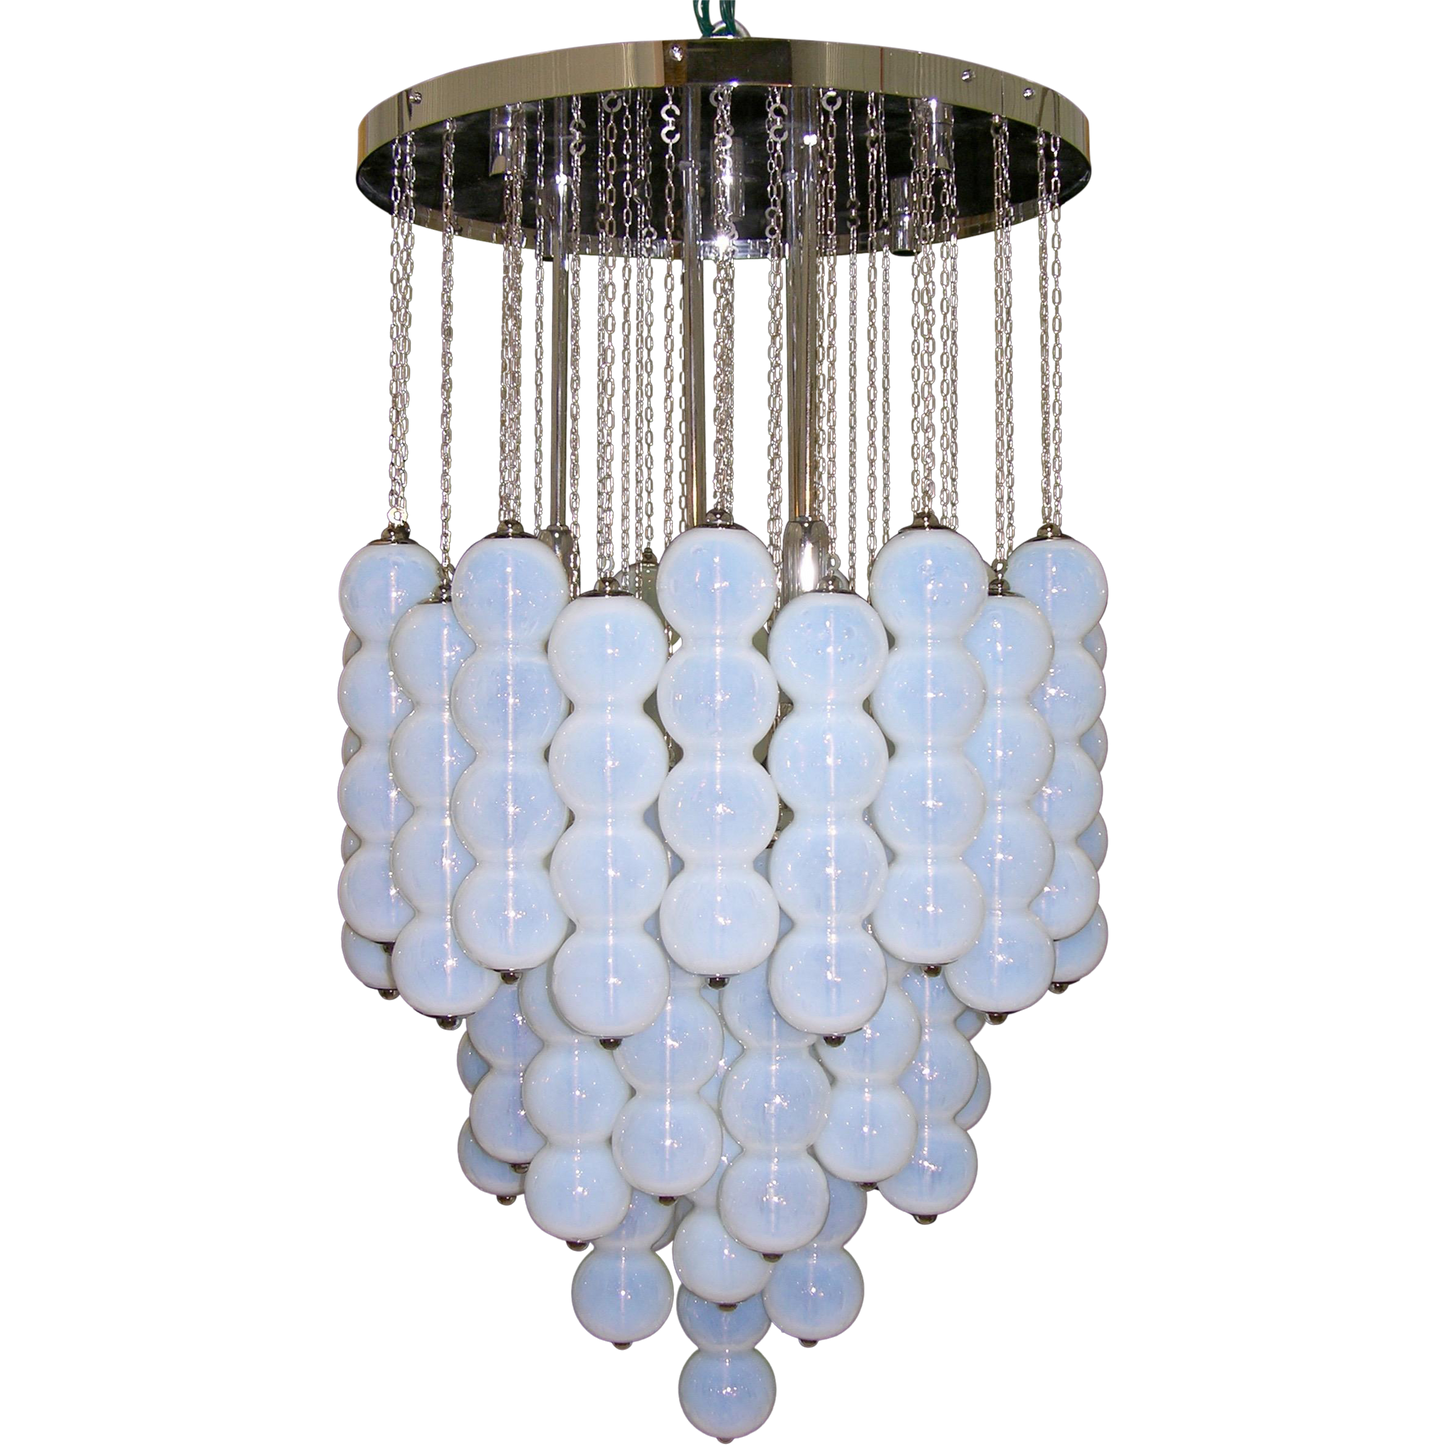 1980 Translucent White Murano Glass Pendant Chandelier - Cosulich Interiors & Antiques